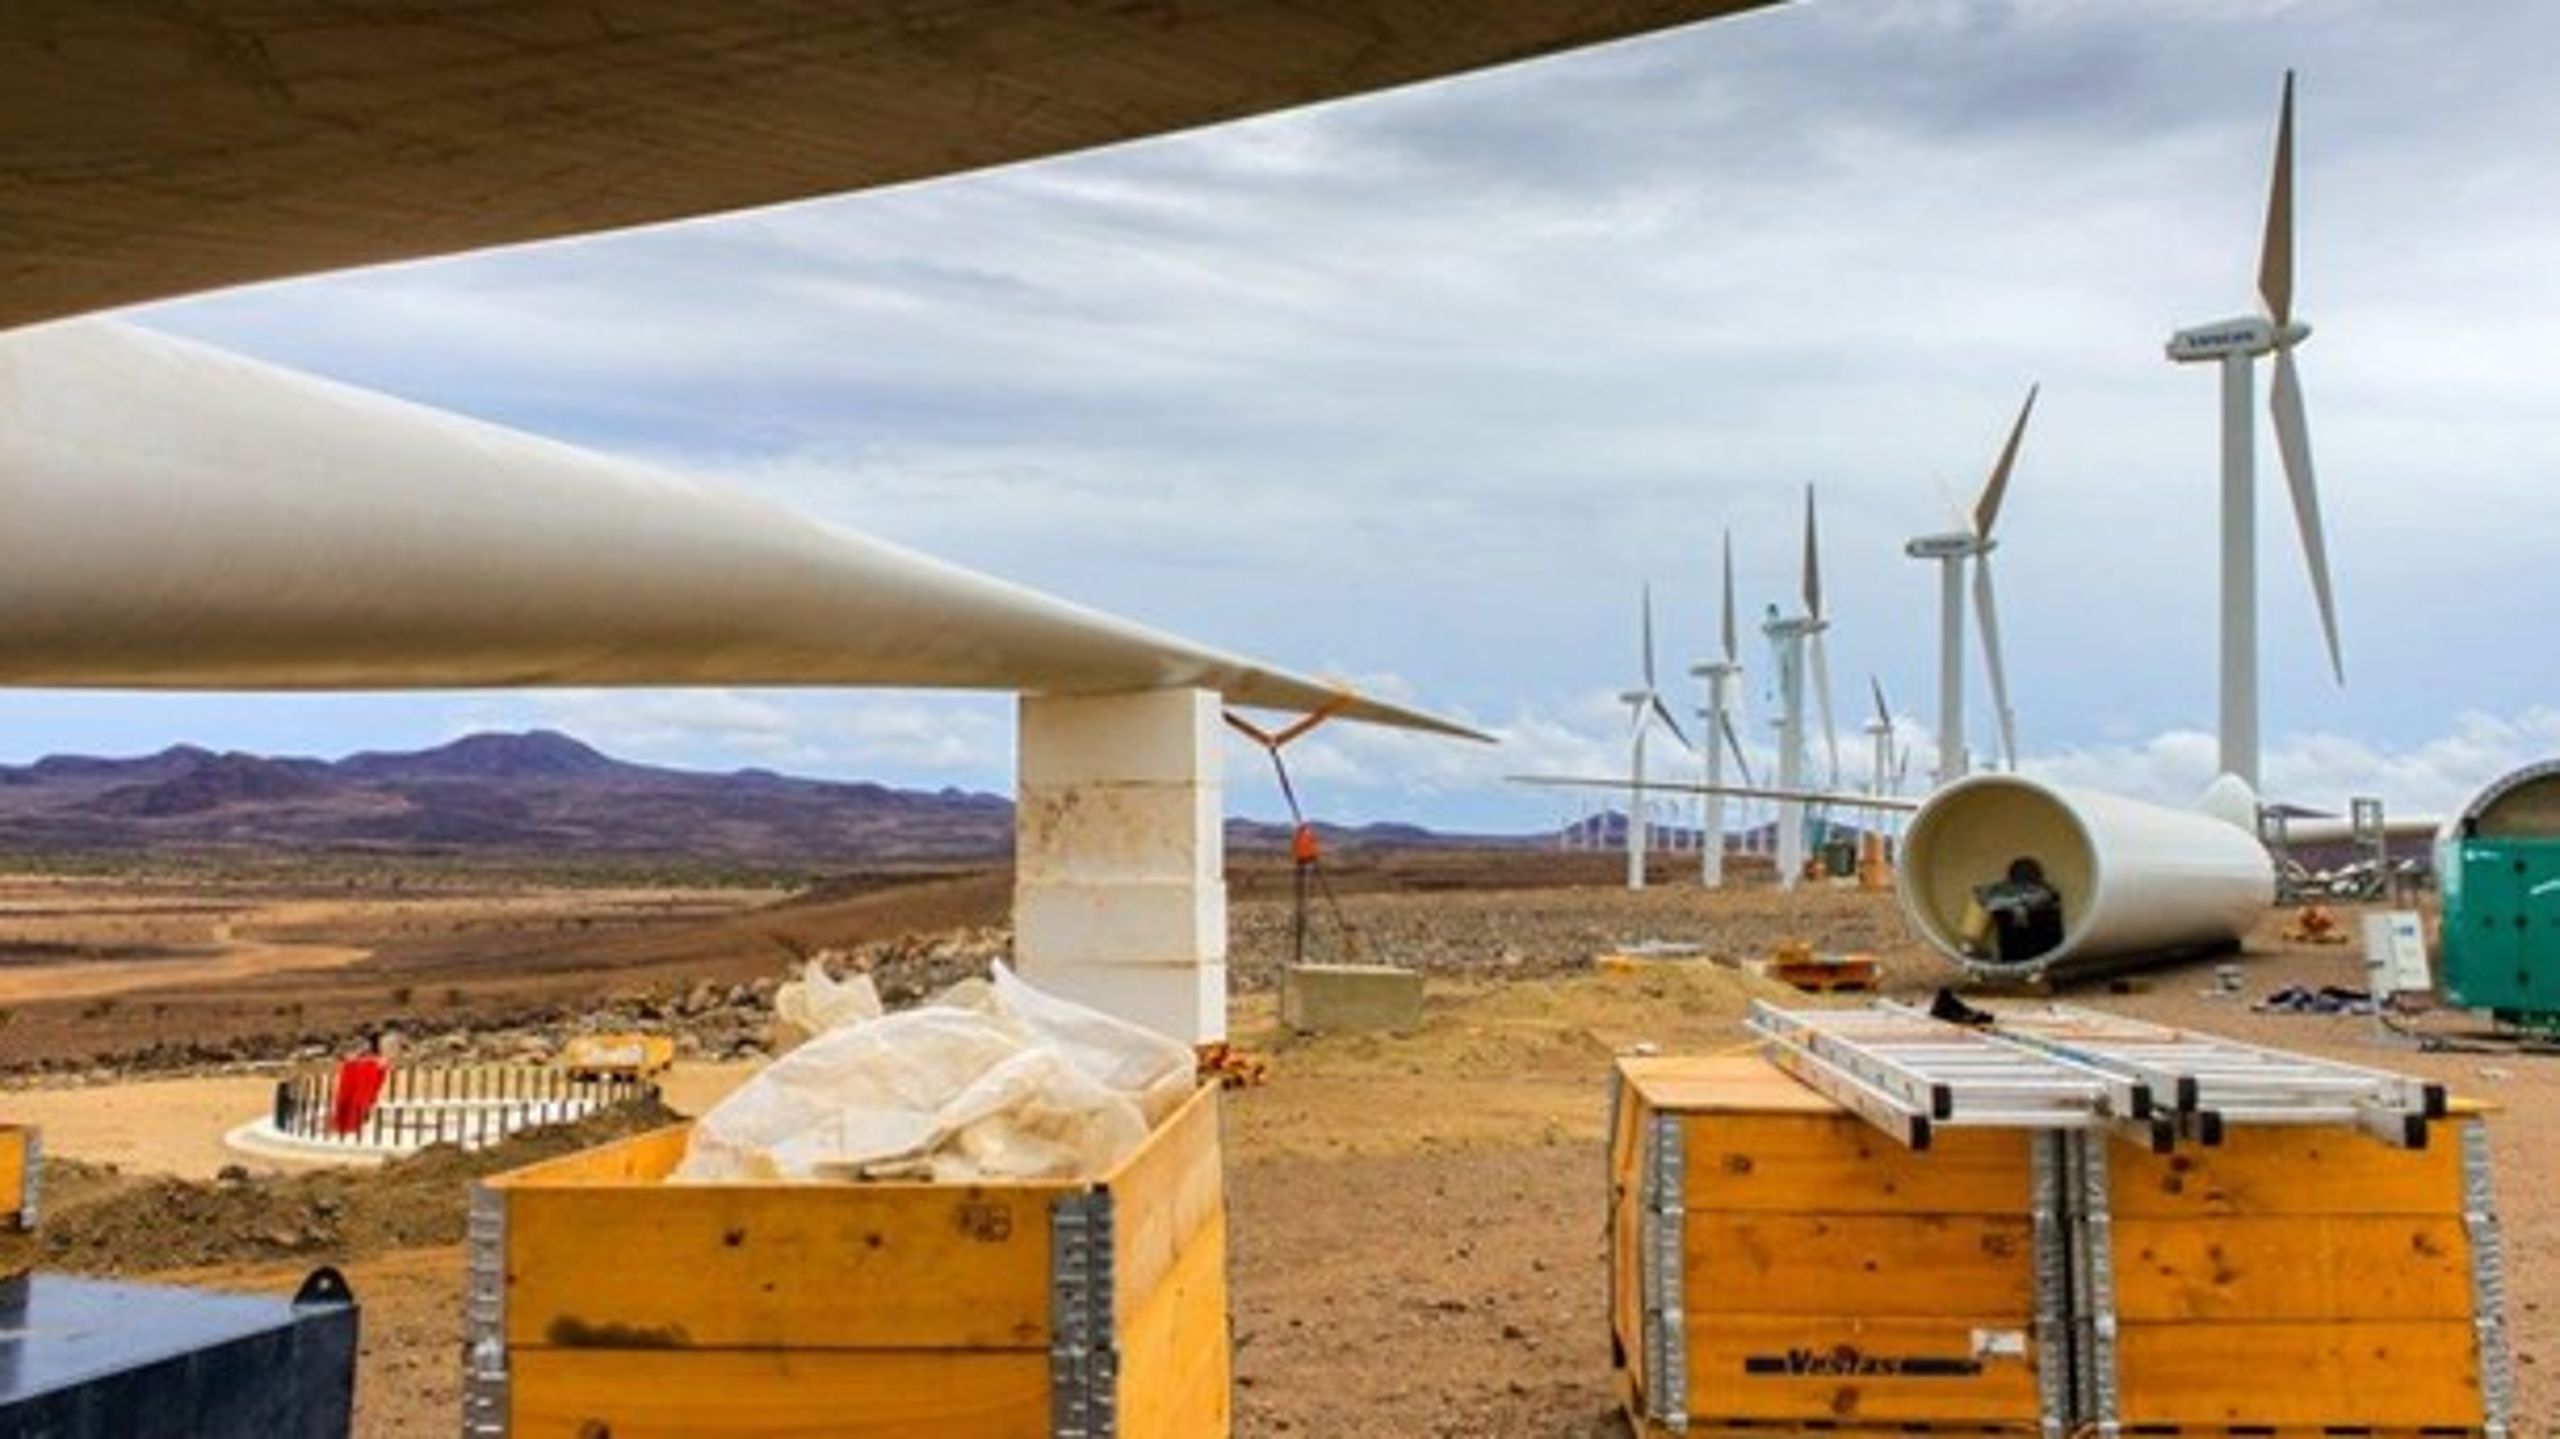 Vestas byggede vindmøller ved Lake Turkana i Kenya. Projektet er støtte af blandt andet Investeringsfonden for Udviklingslande.